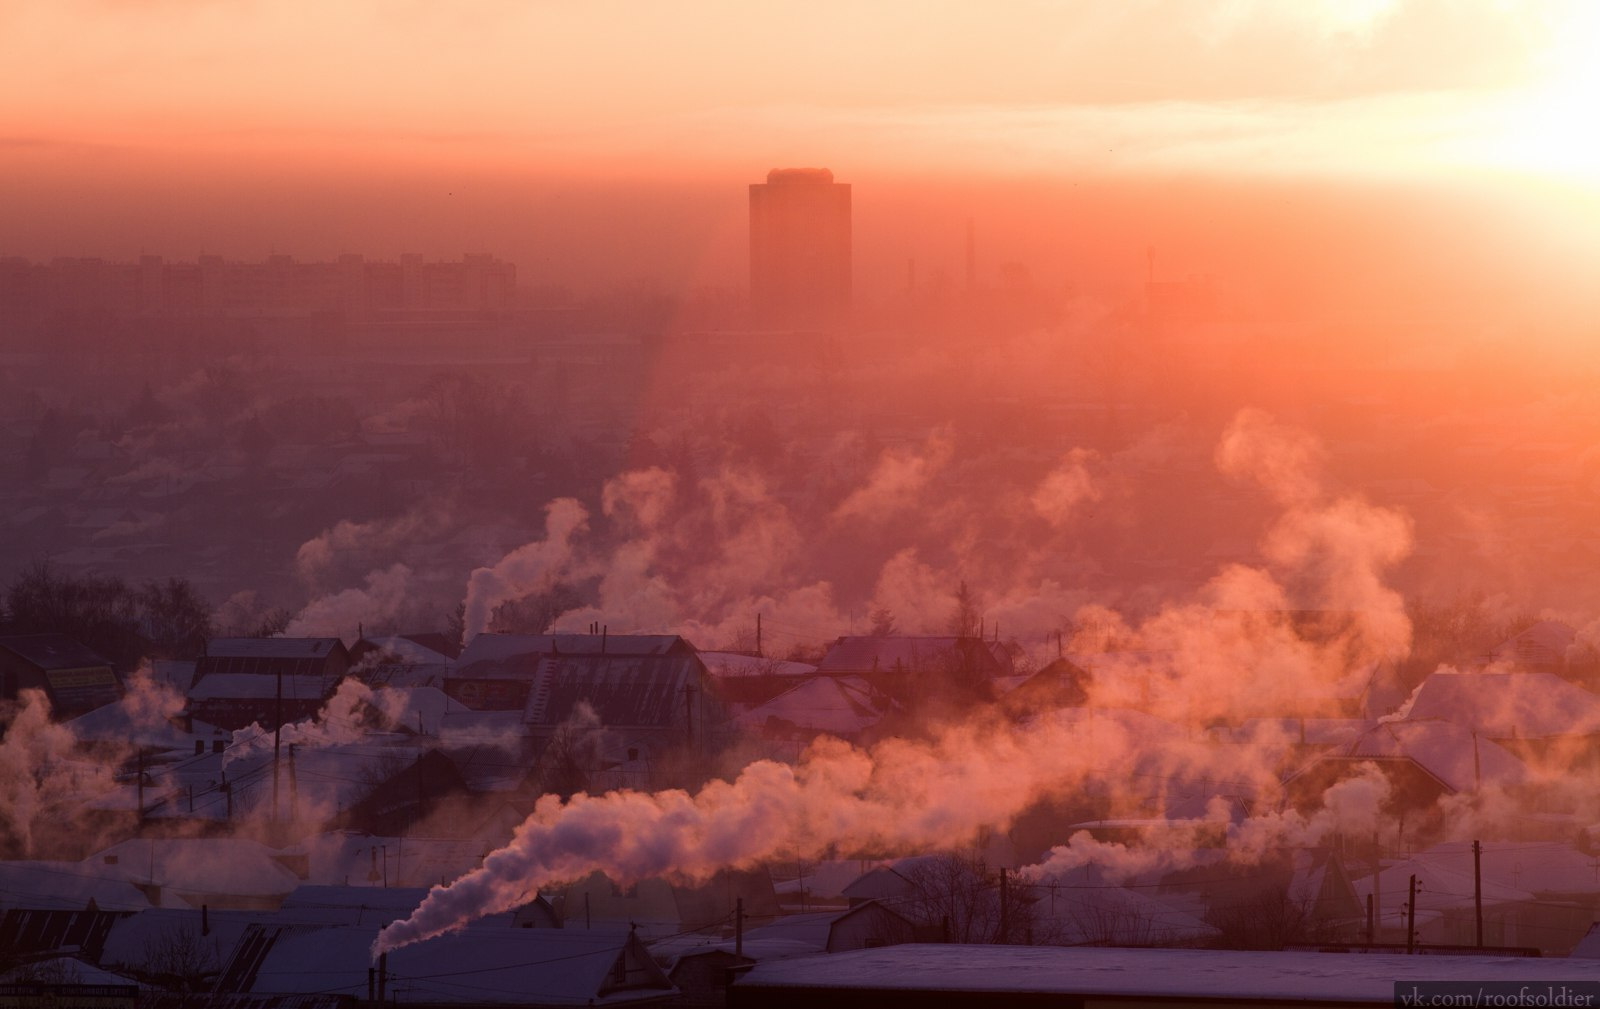 Морозный рассвет Омск город архитектура провинция промышленность Россия регион мороз зима туман дым смог рассвет закат утро